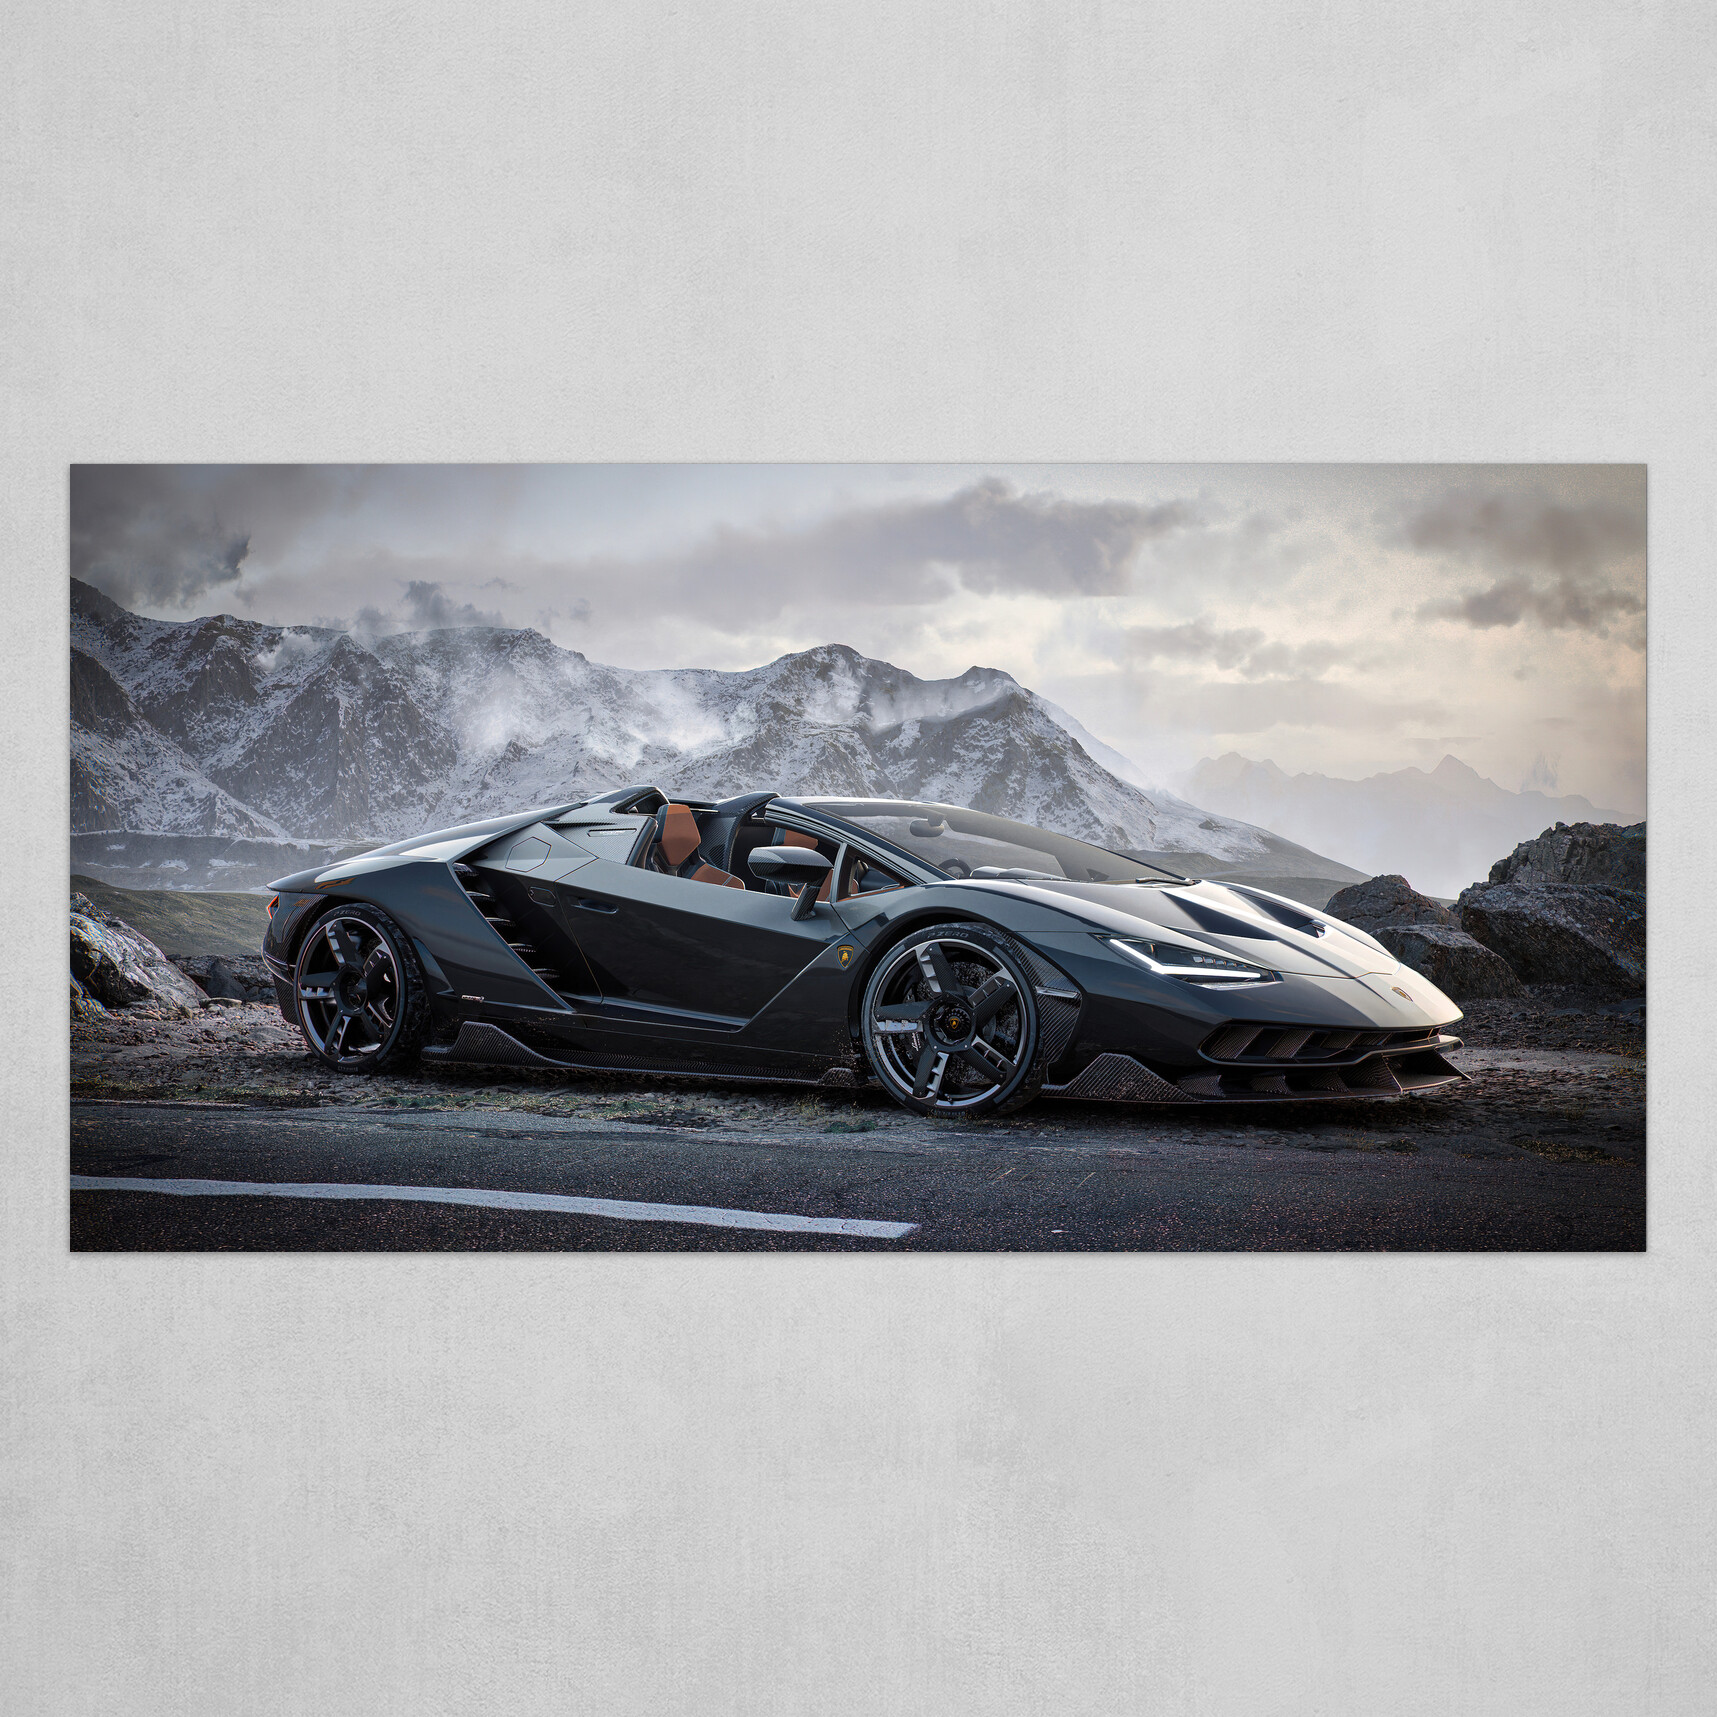 Lamborghini Centenario - Render achieved with Unreal Engine